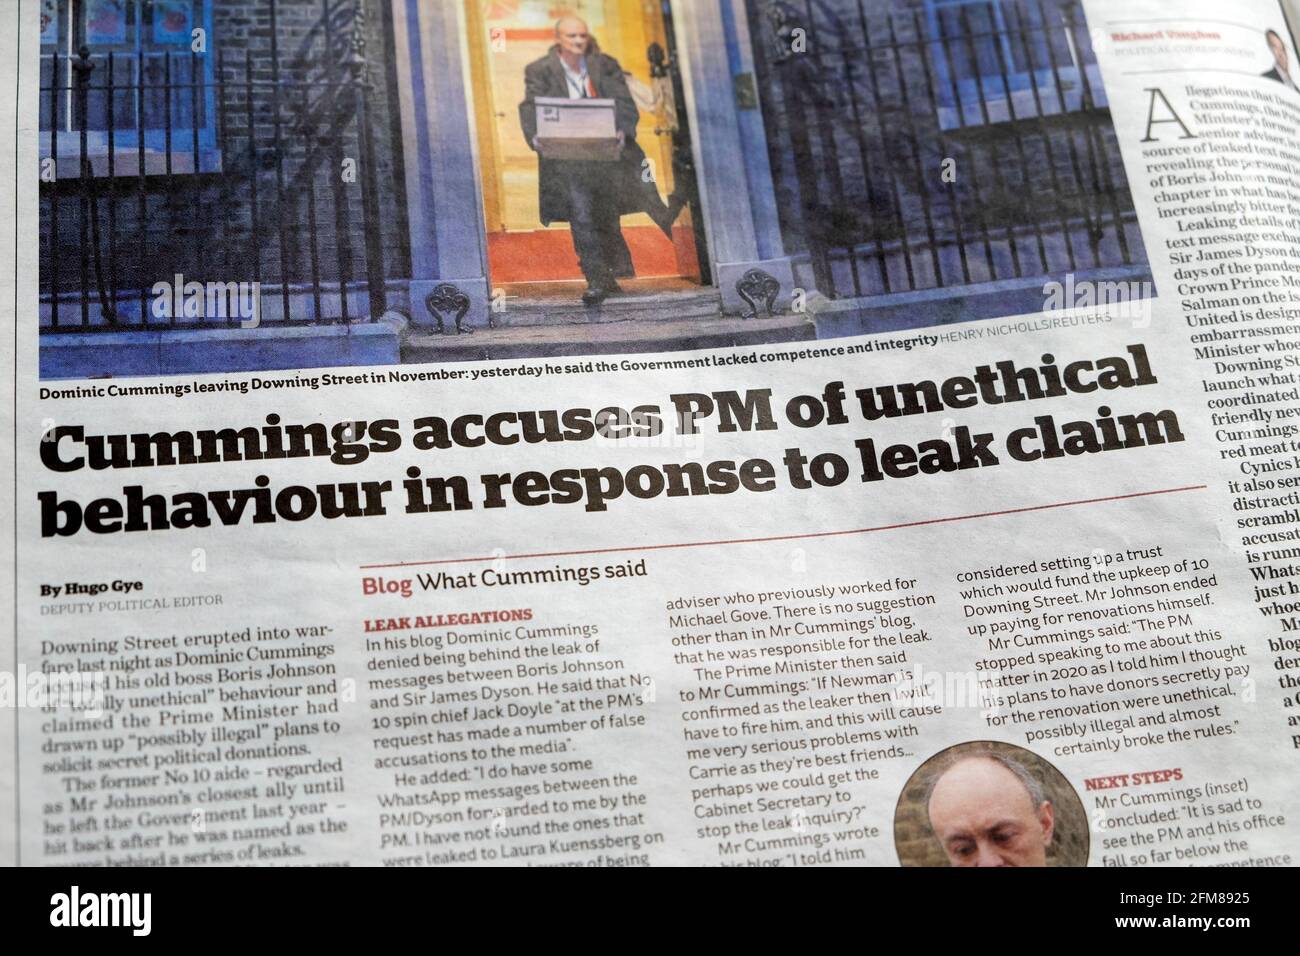 Dominic 'Cummings accusa PM di comportamento non etico in risposta a. Leak Claim' PM Boris Johnson giornale titolo all'interno della pagina di Guardian London Regno Unito Foto Stock